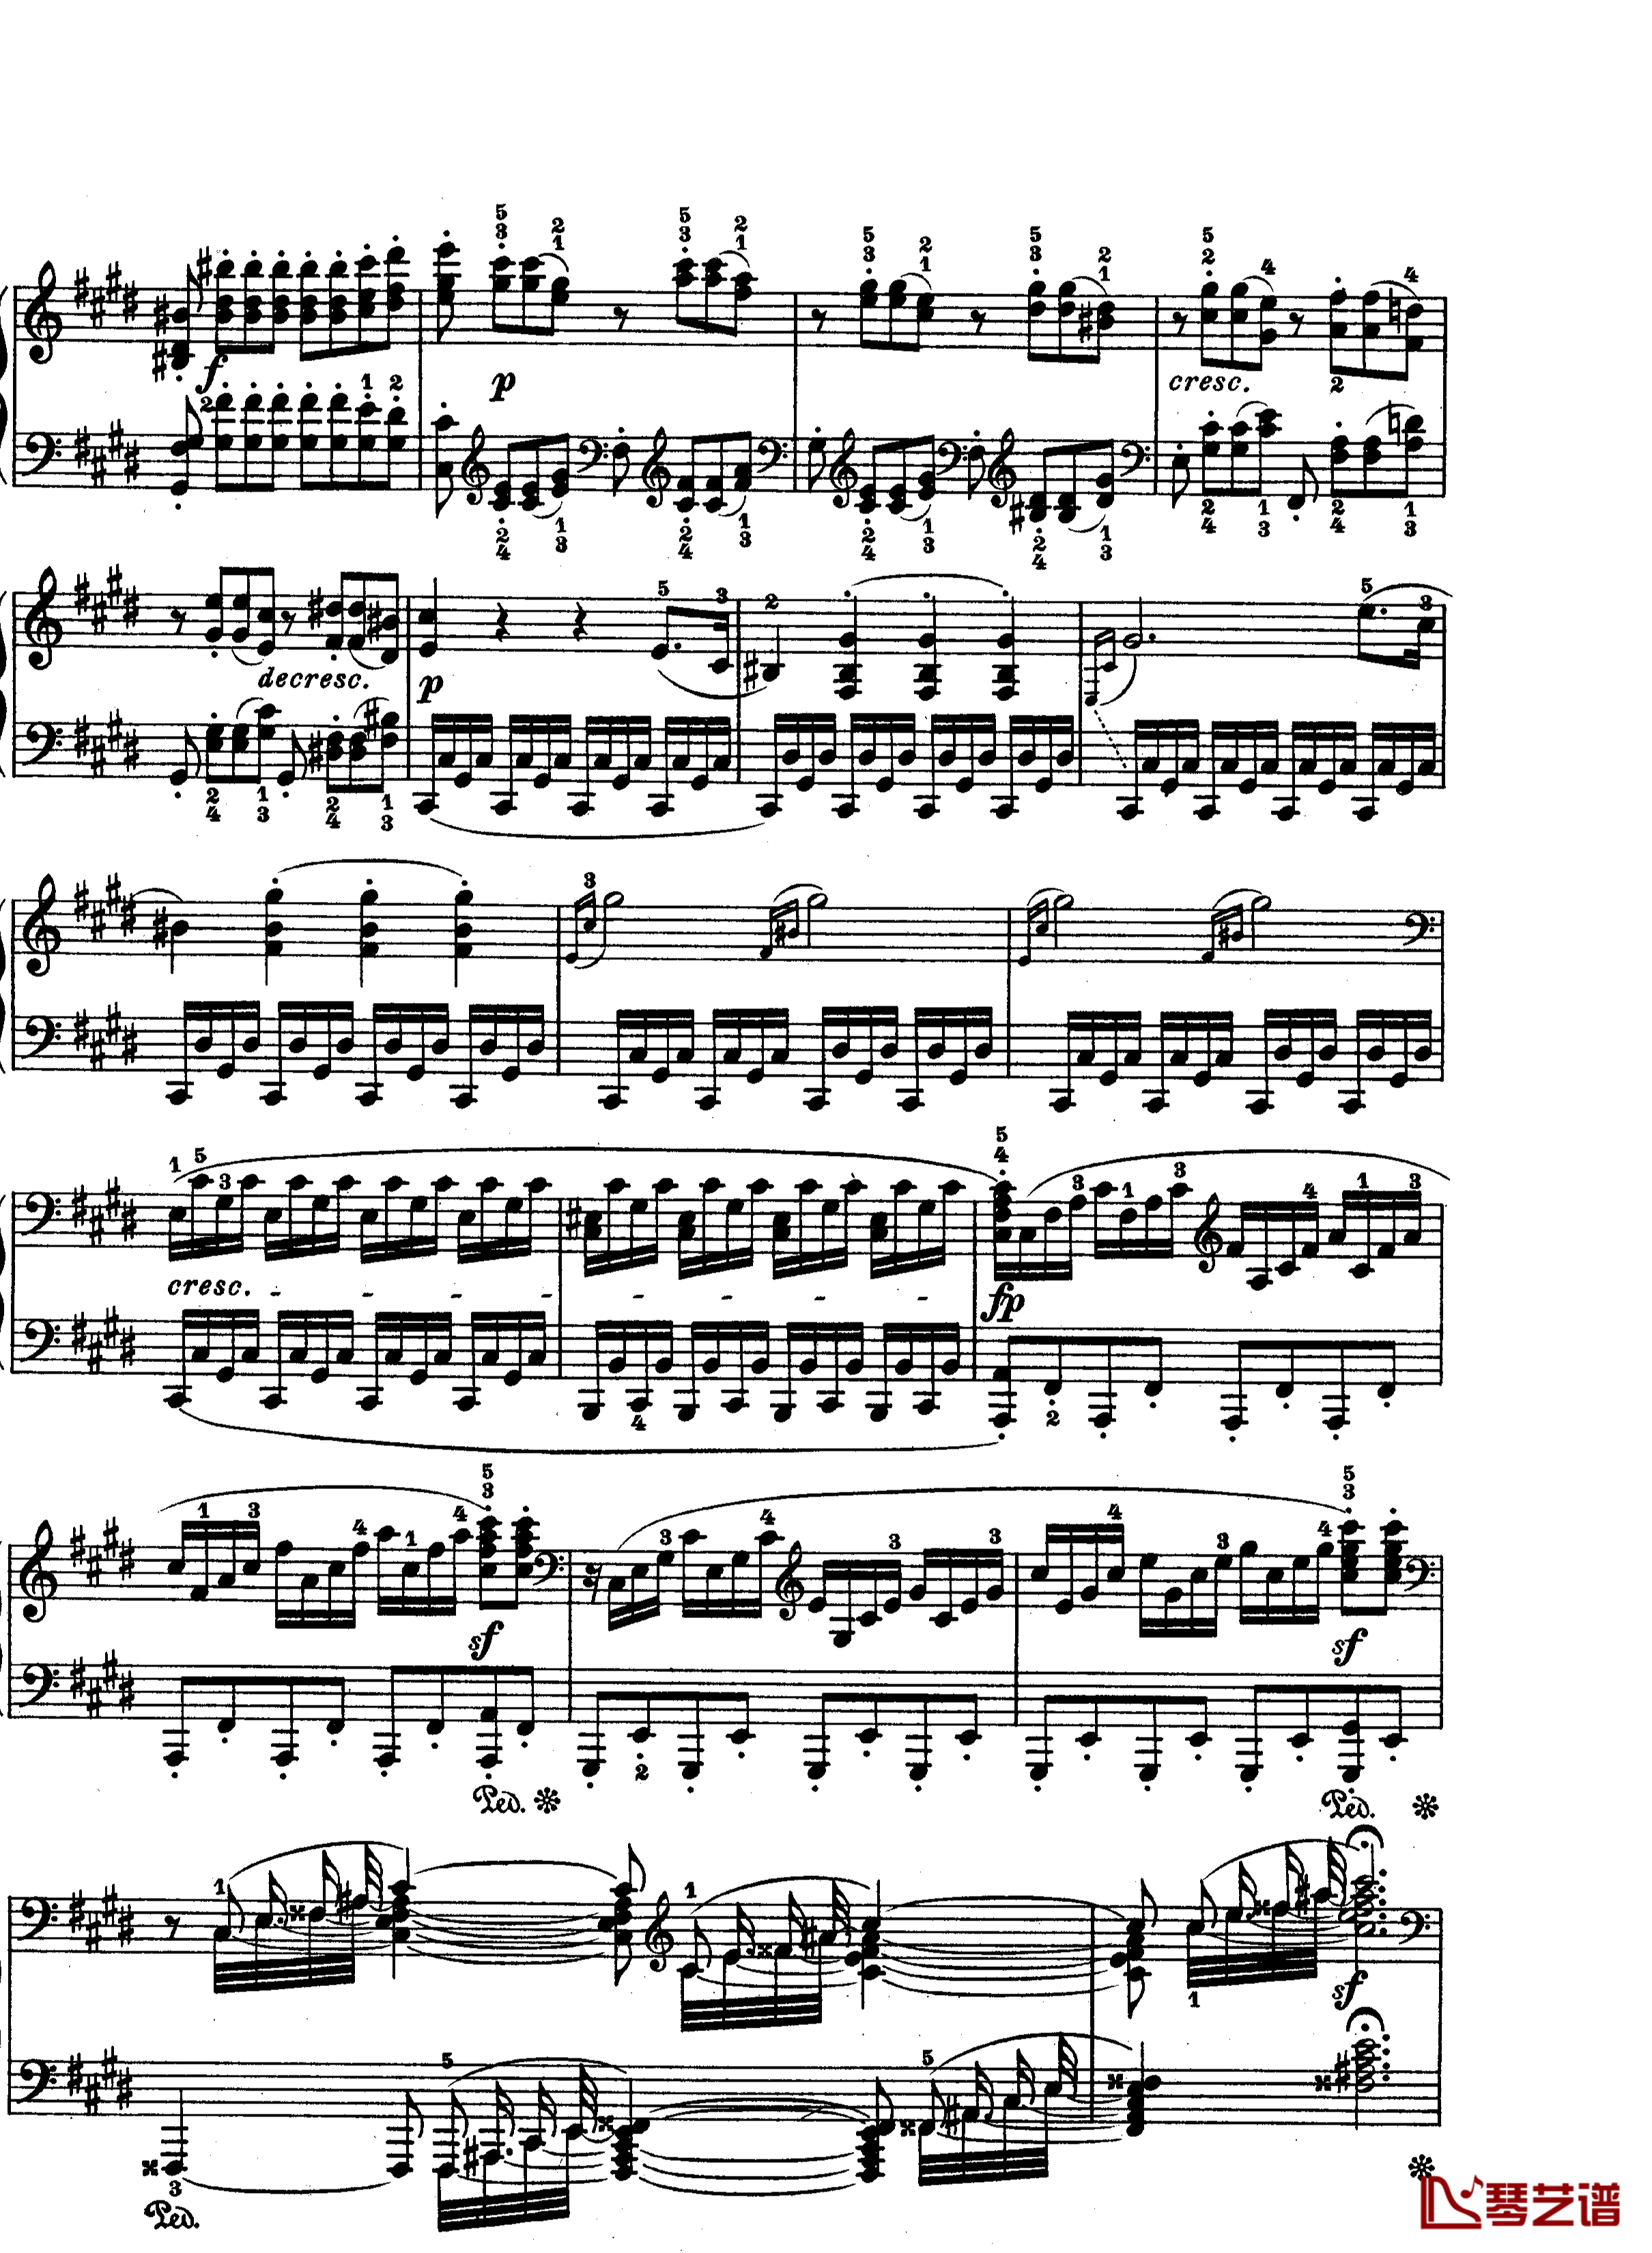 月光曲钢琴谱-第十四钢琴奏鸣曲-Op.27 No.2-贝多芬-beethoven12